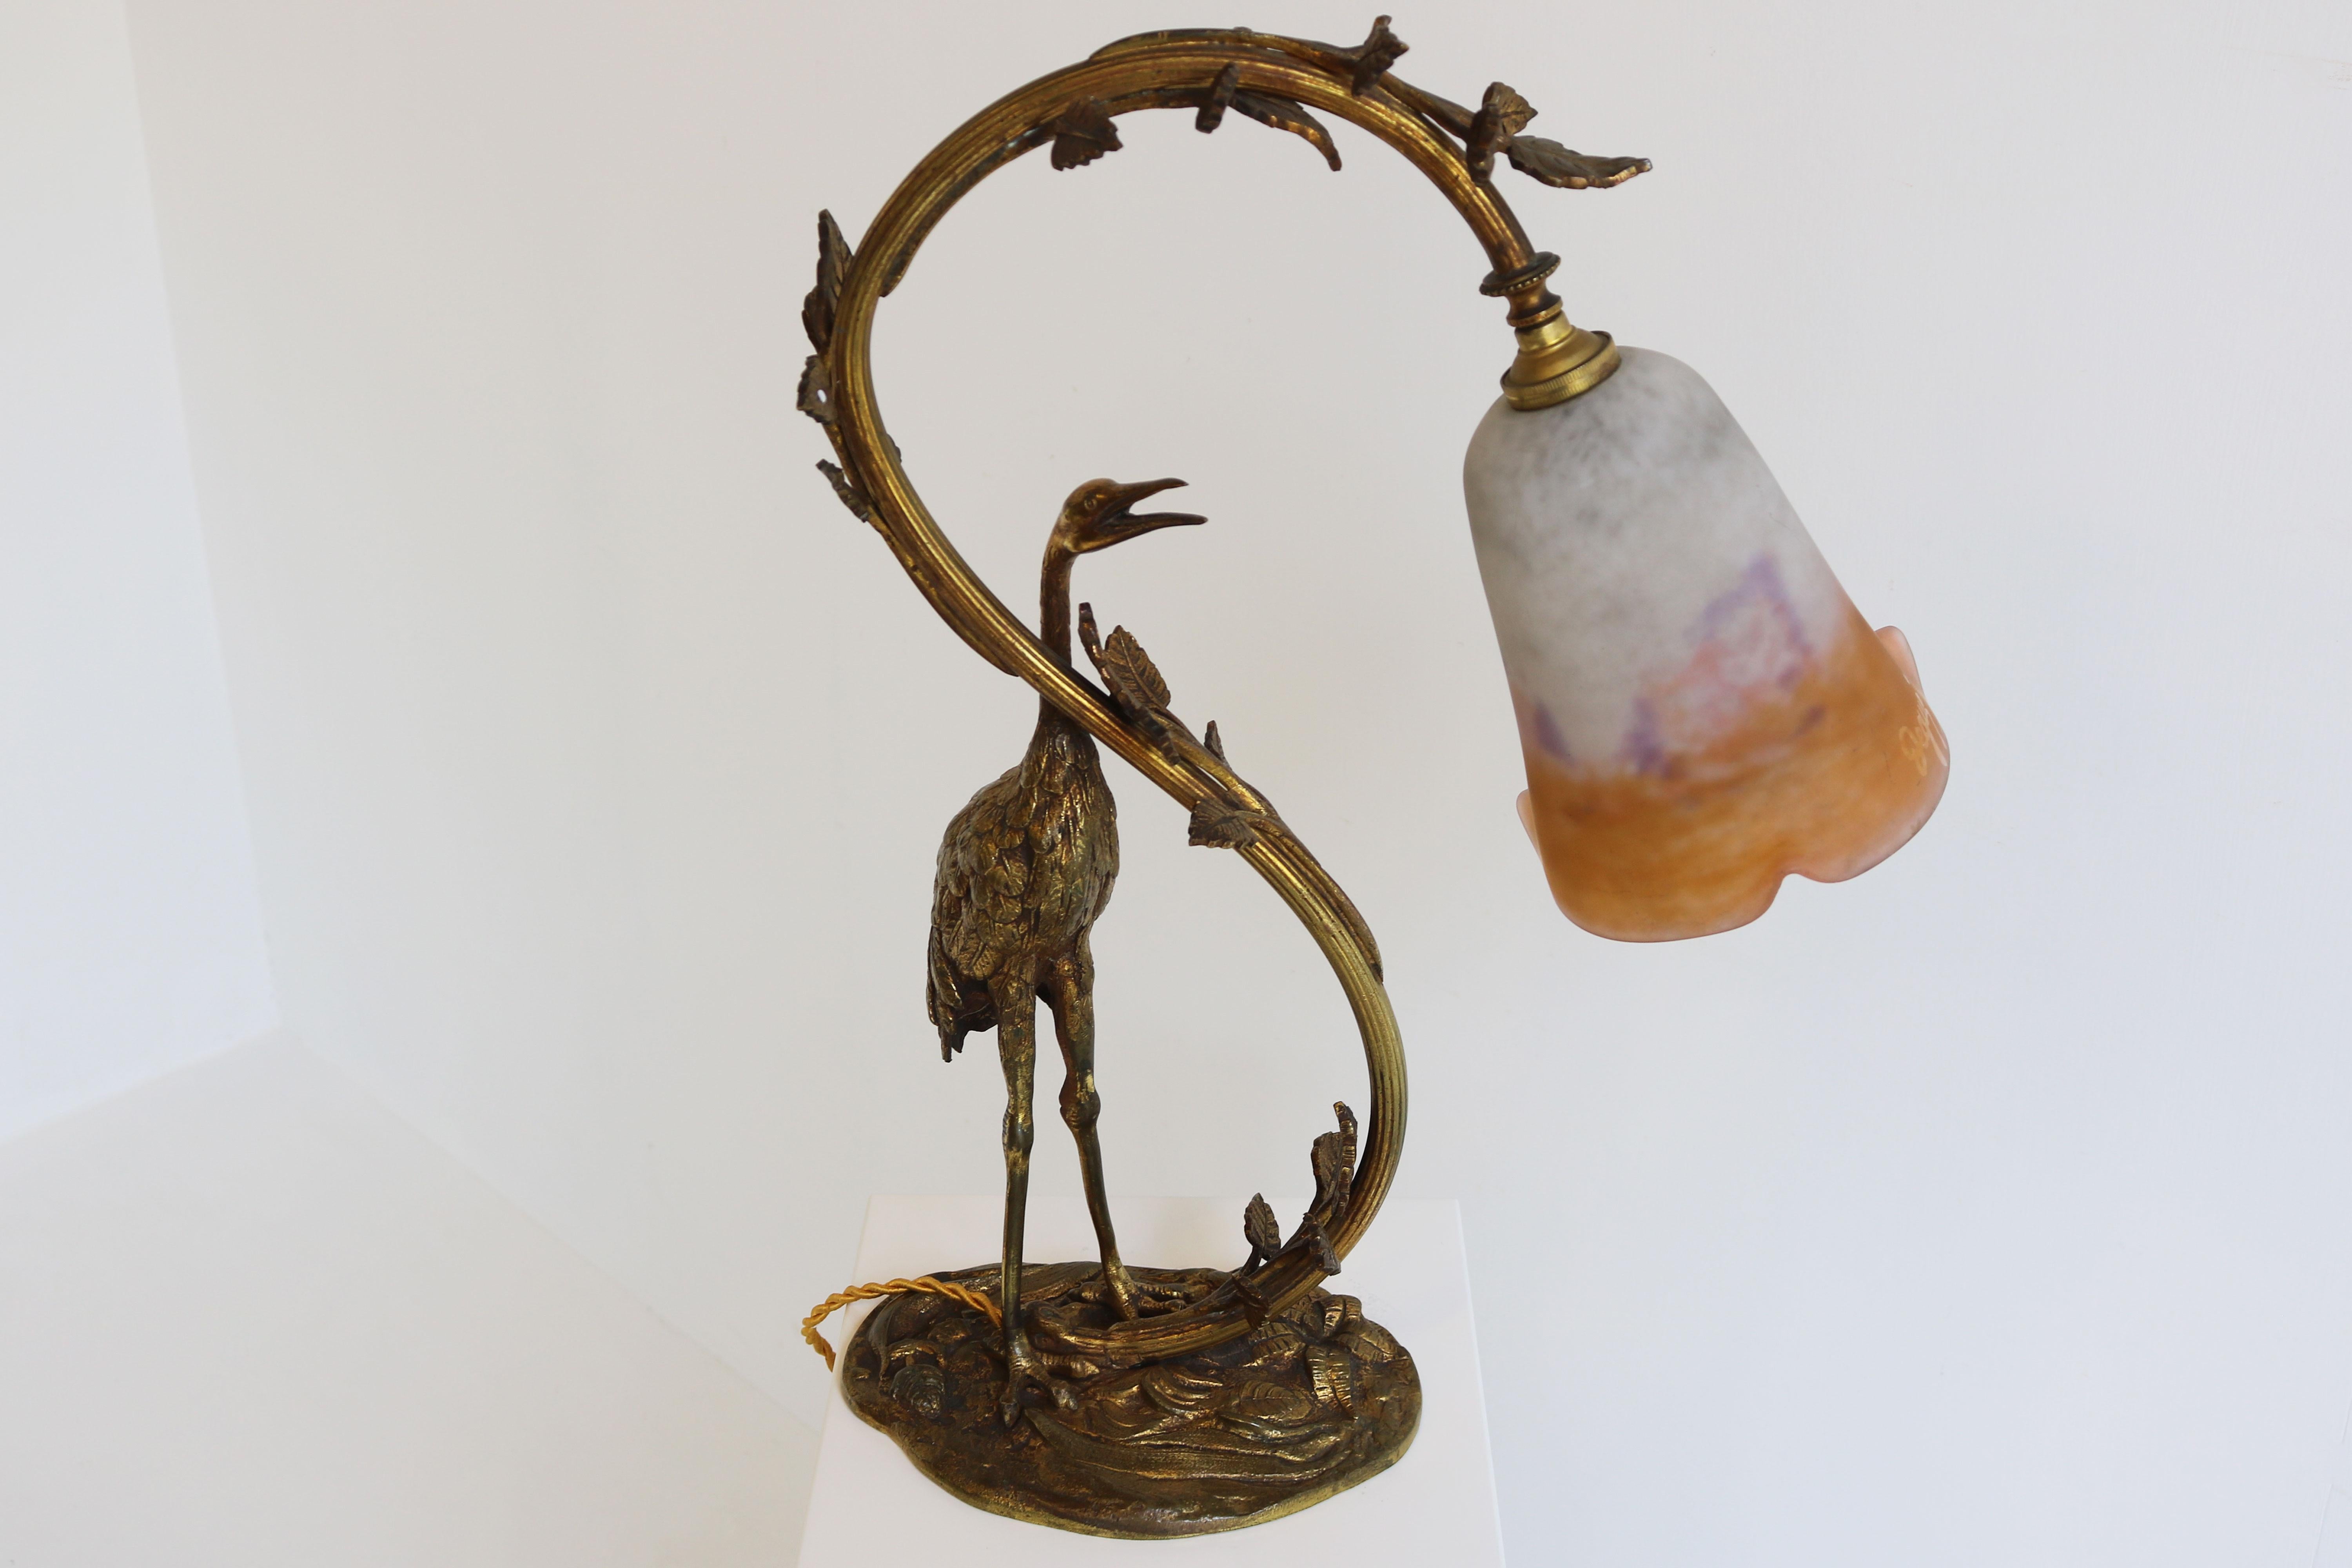 Antique French Art Nouveau Table Lamp Heron by Degue 1920 Pate De Verre Bronze  For Sale 10